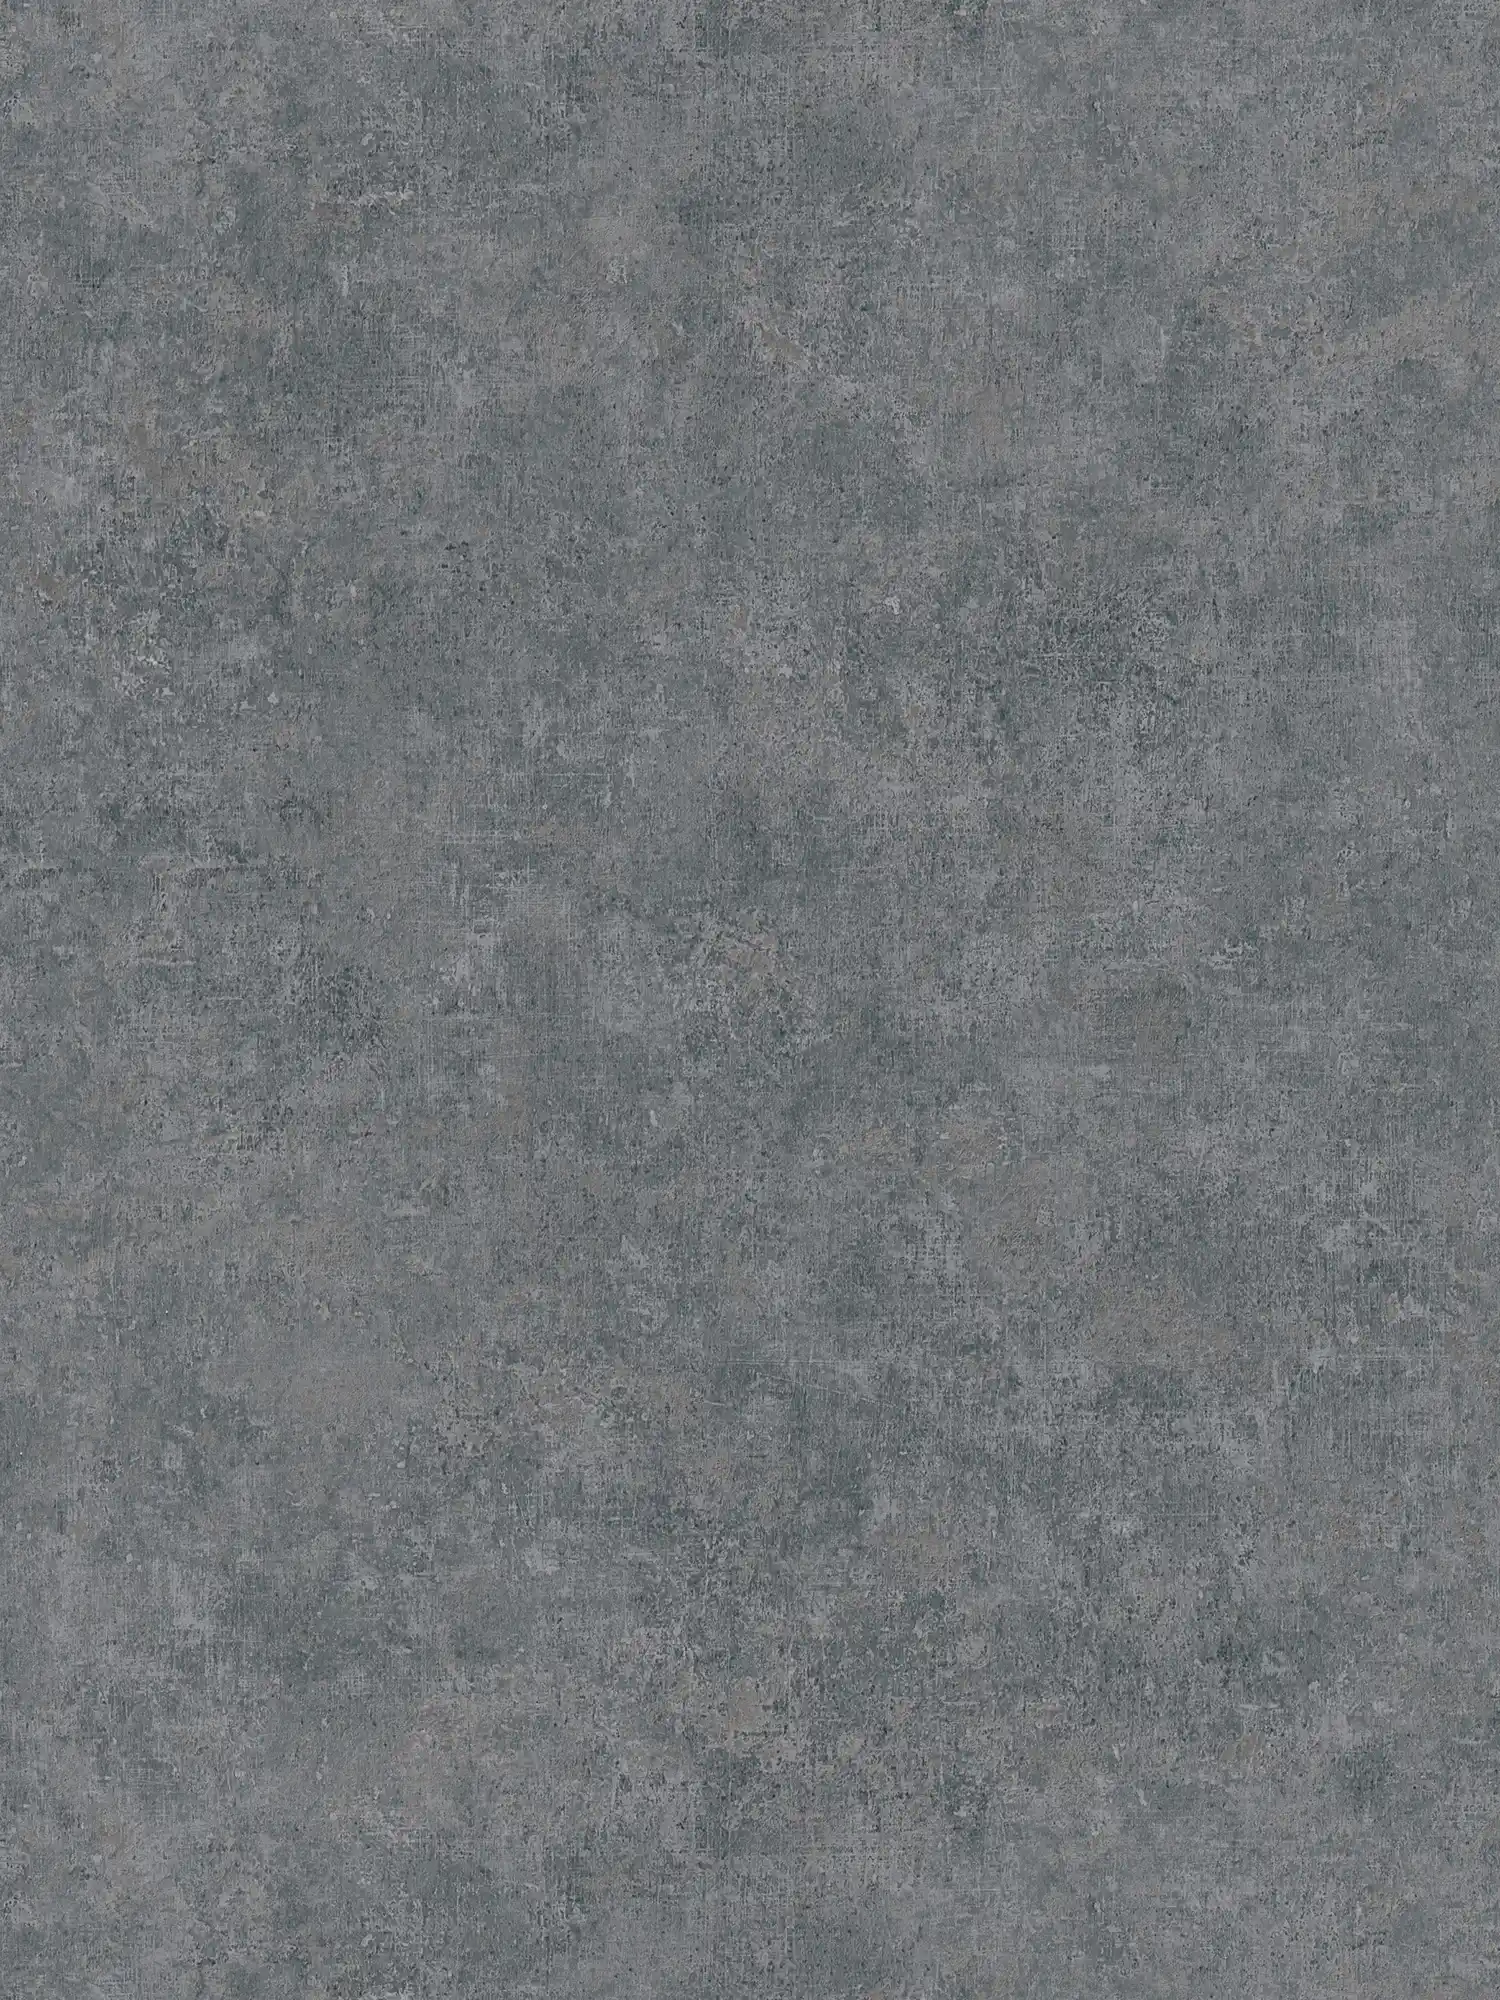 Papel pintado de tejido no tejido con diseño tono sobre tono, aspecto usado - gris
